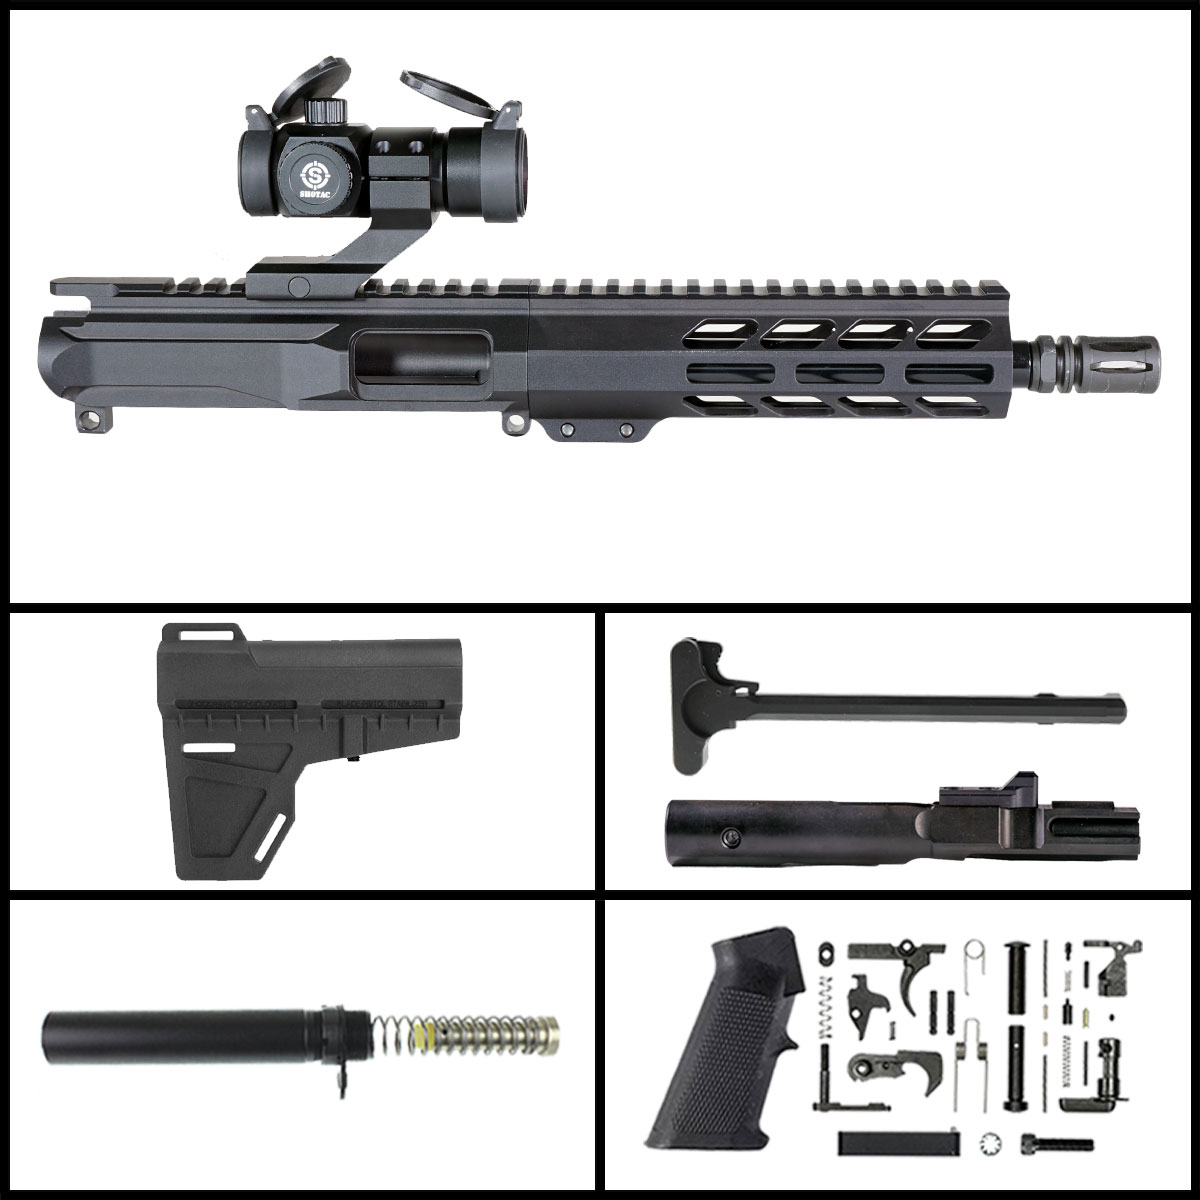 OTD 'Eternal Night Gen 2 w/ Shotac Cantilever' 8.5-inch AR-15 9mm Nitride Pistol Full Build Kit